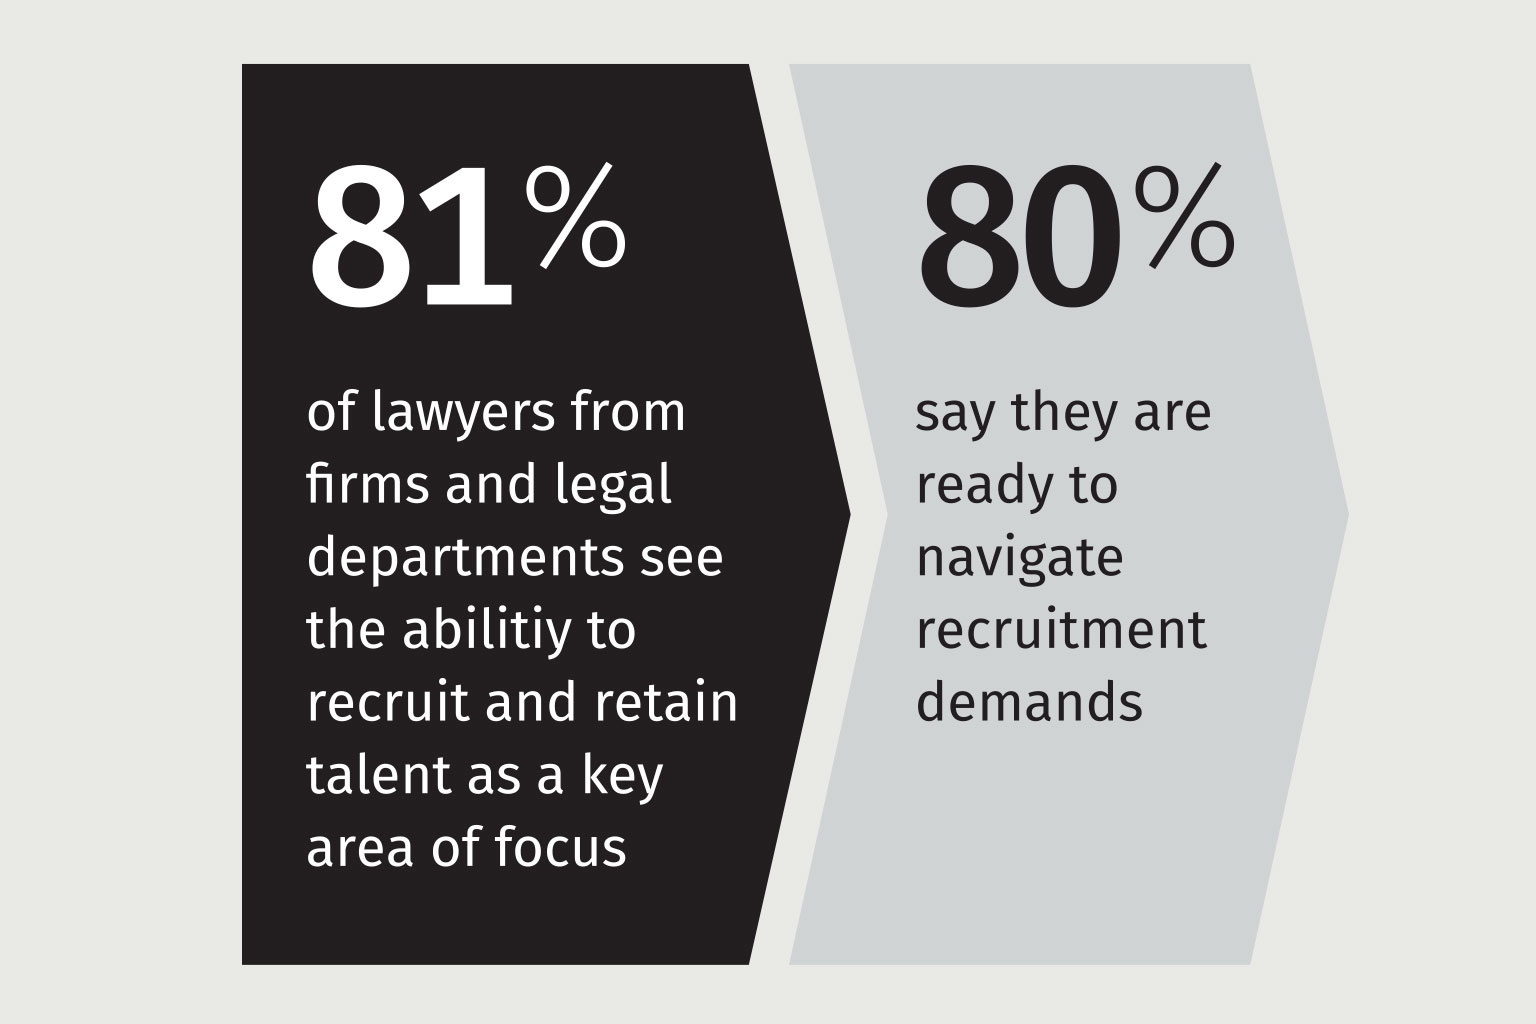 Nábor a udržanie talentov je kľúčovou výzvou pre právny sektor